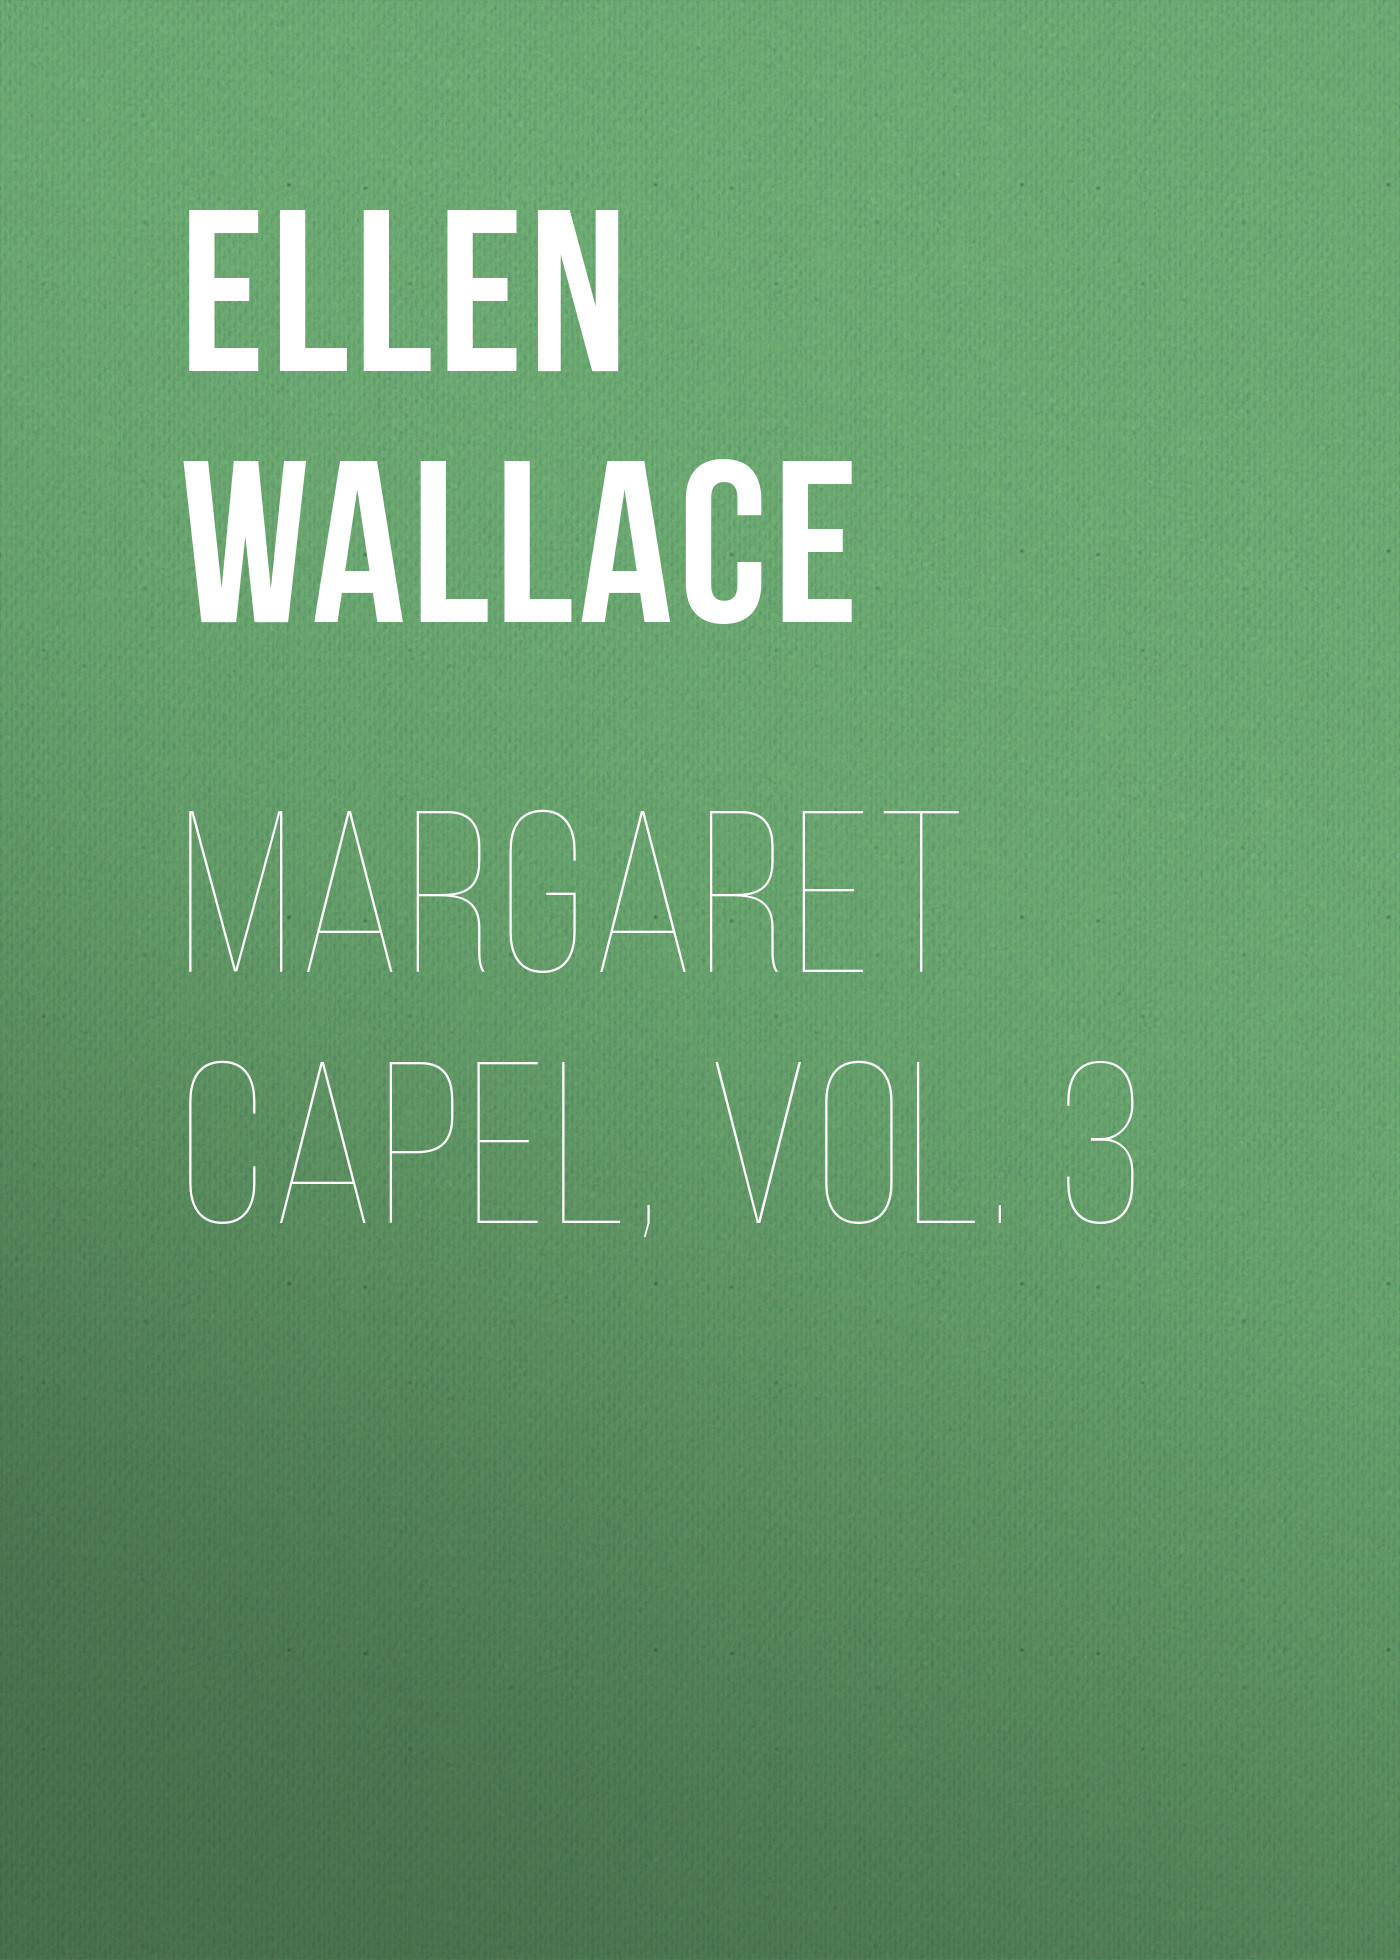 Книга Margaret Capel, vol. 3 из серии , созданная Ellen Wallace, может относится к жанру Зарубежная классика, Литература 19 века, Зарубежная старинная литература. Стоимость электронной книги Margaret Capel, vol. 3 с идентификатором 34282600 составляет 0 руб.